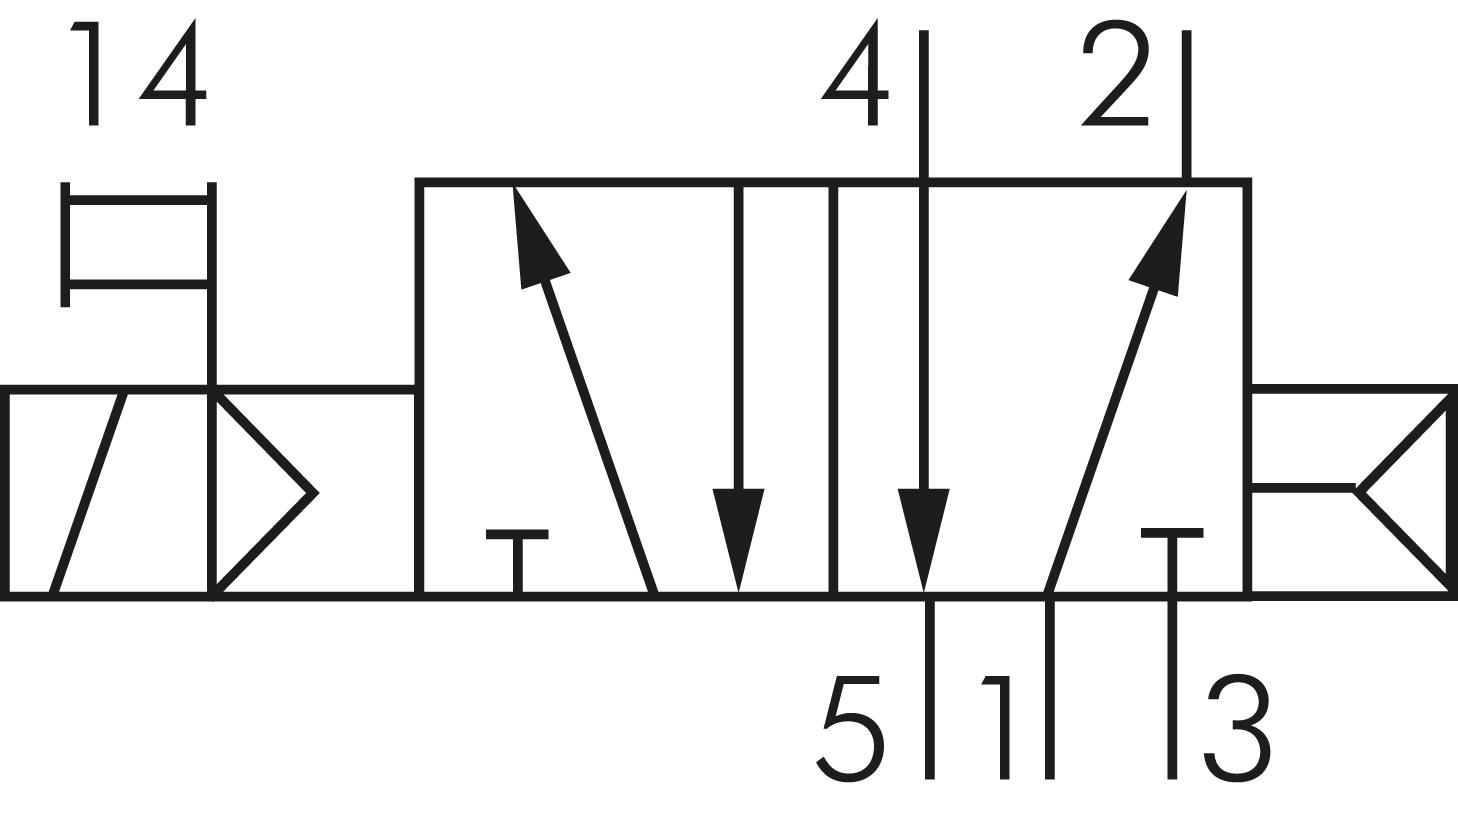 Symbole de commutation: 5/2 voies avec retour en position initiale à ressort pneumatique (monostable)